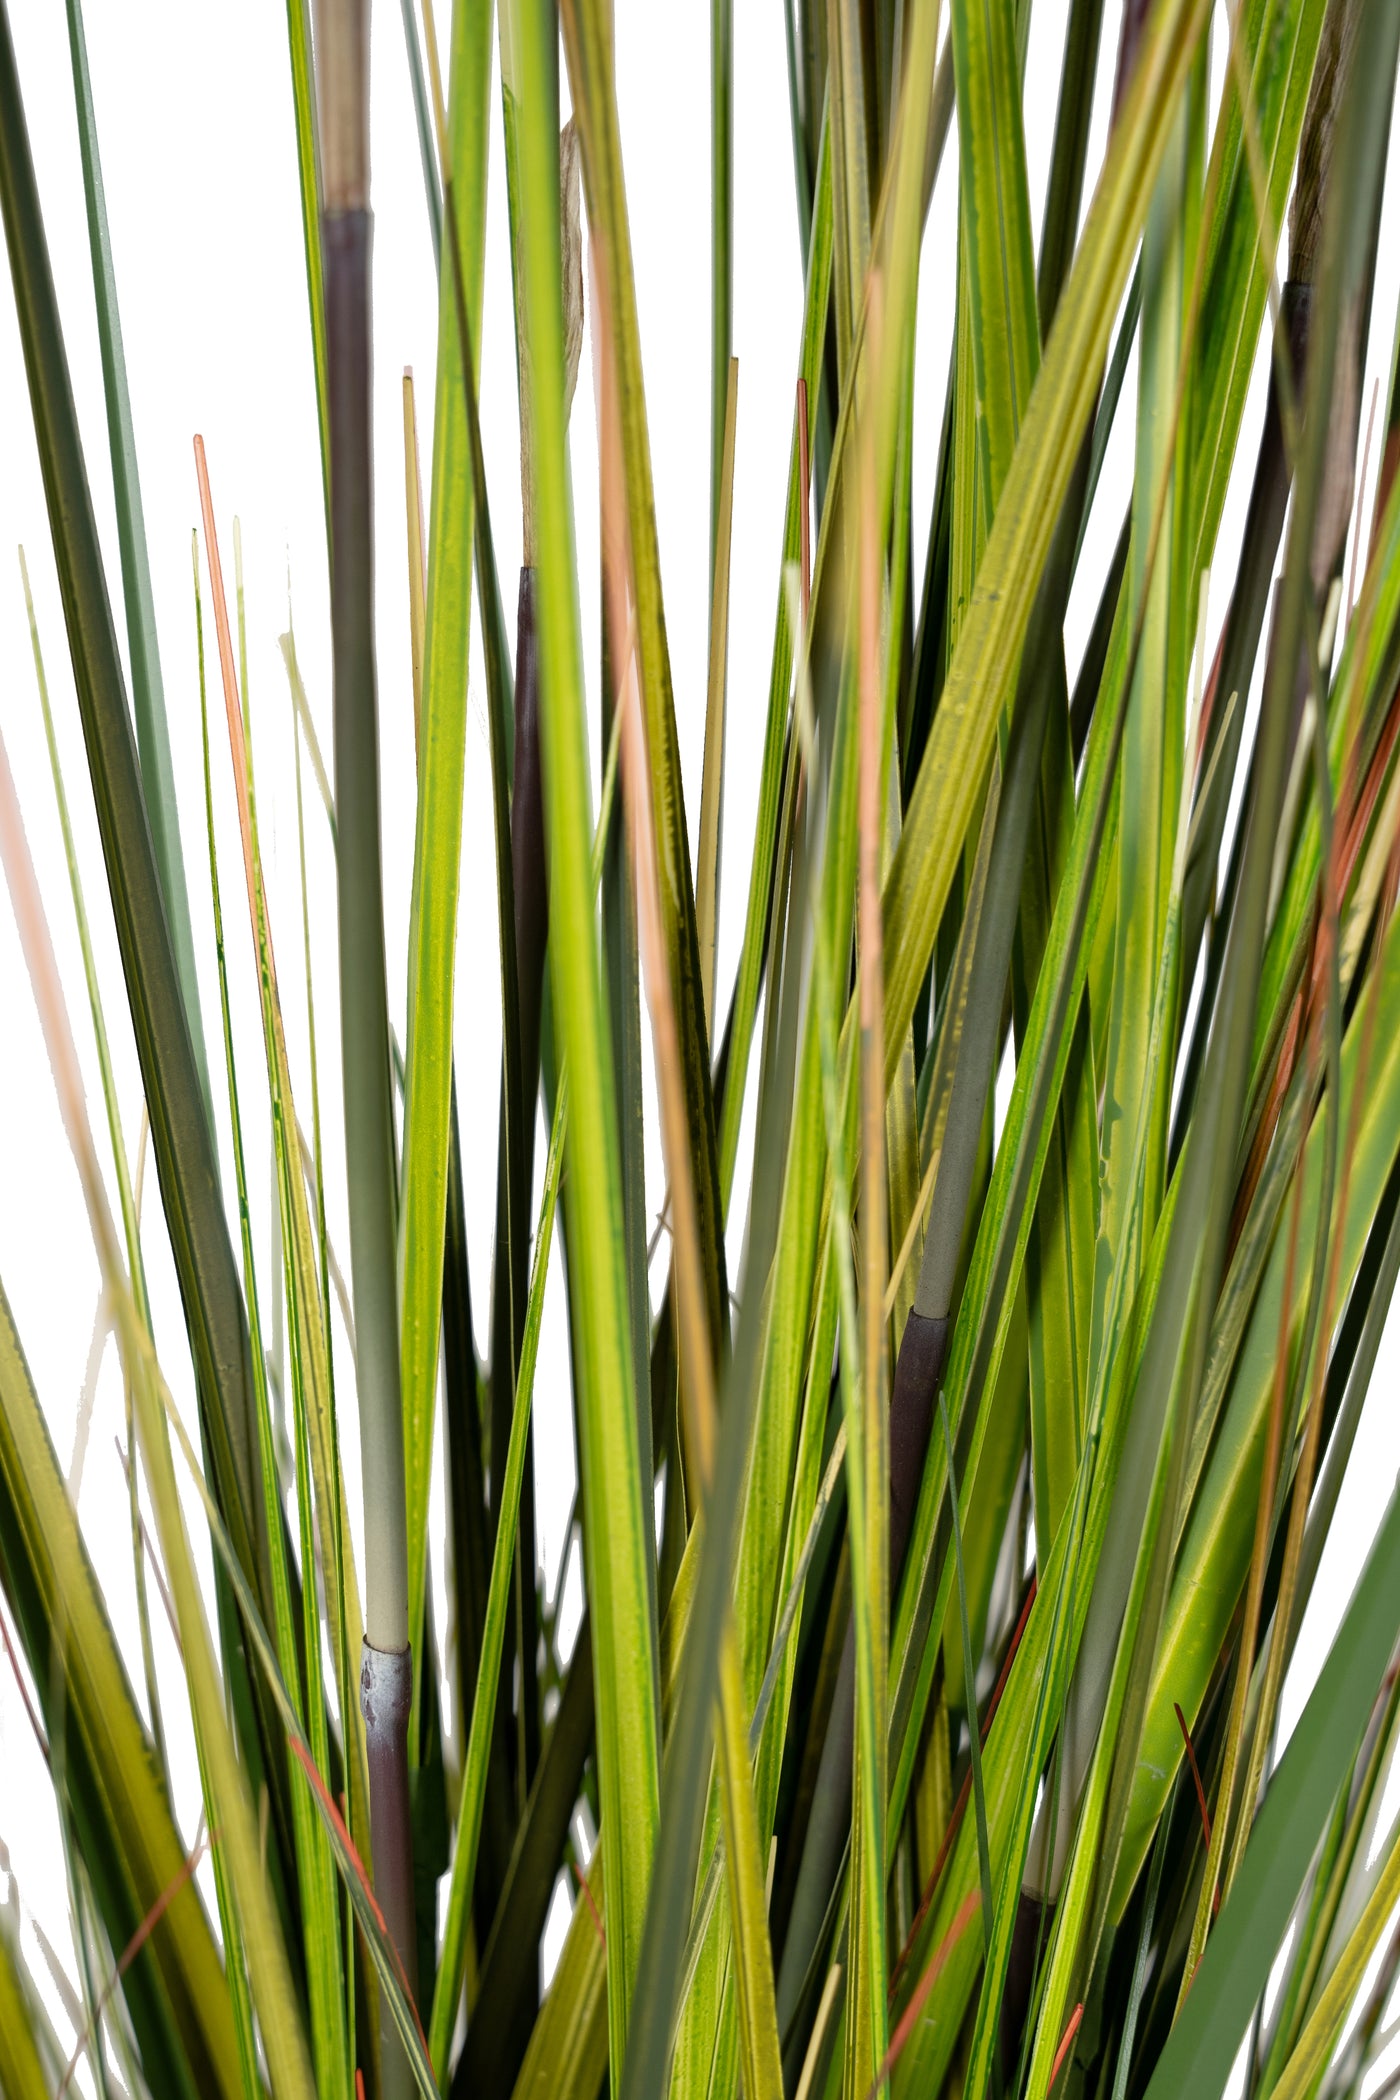 Iarba artificiala Bamboo H90 cm